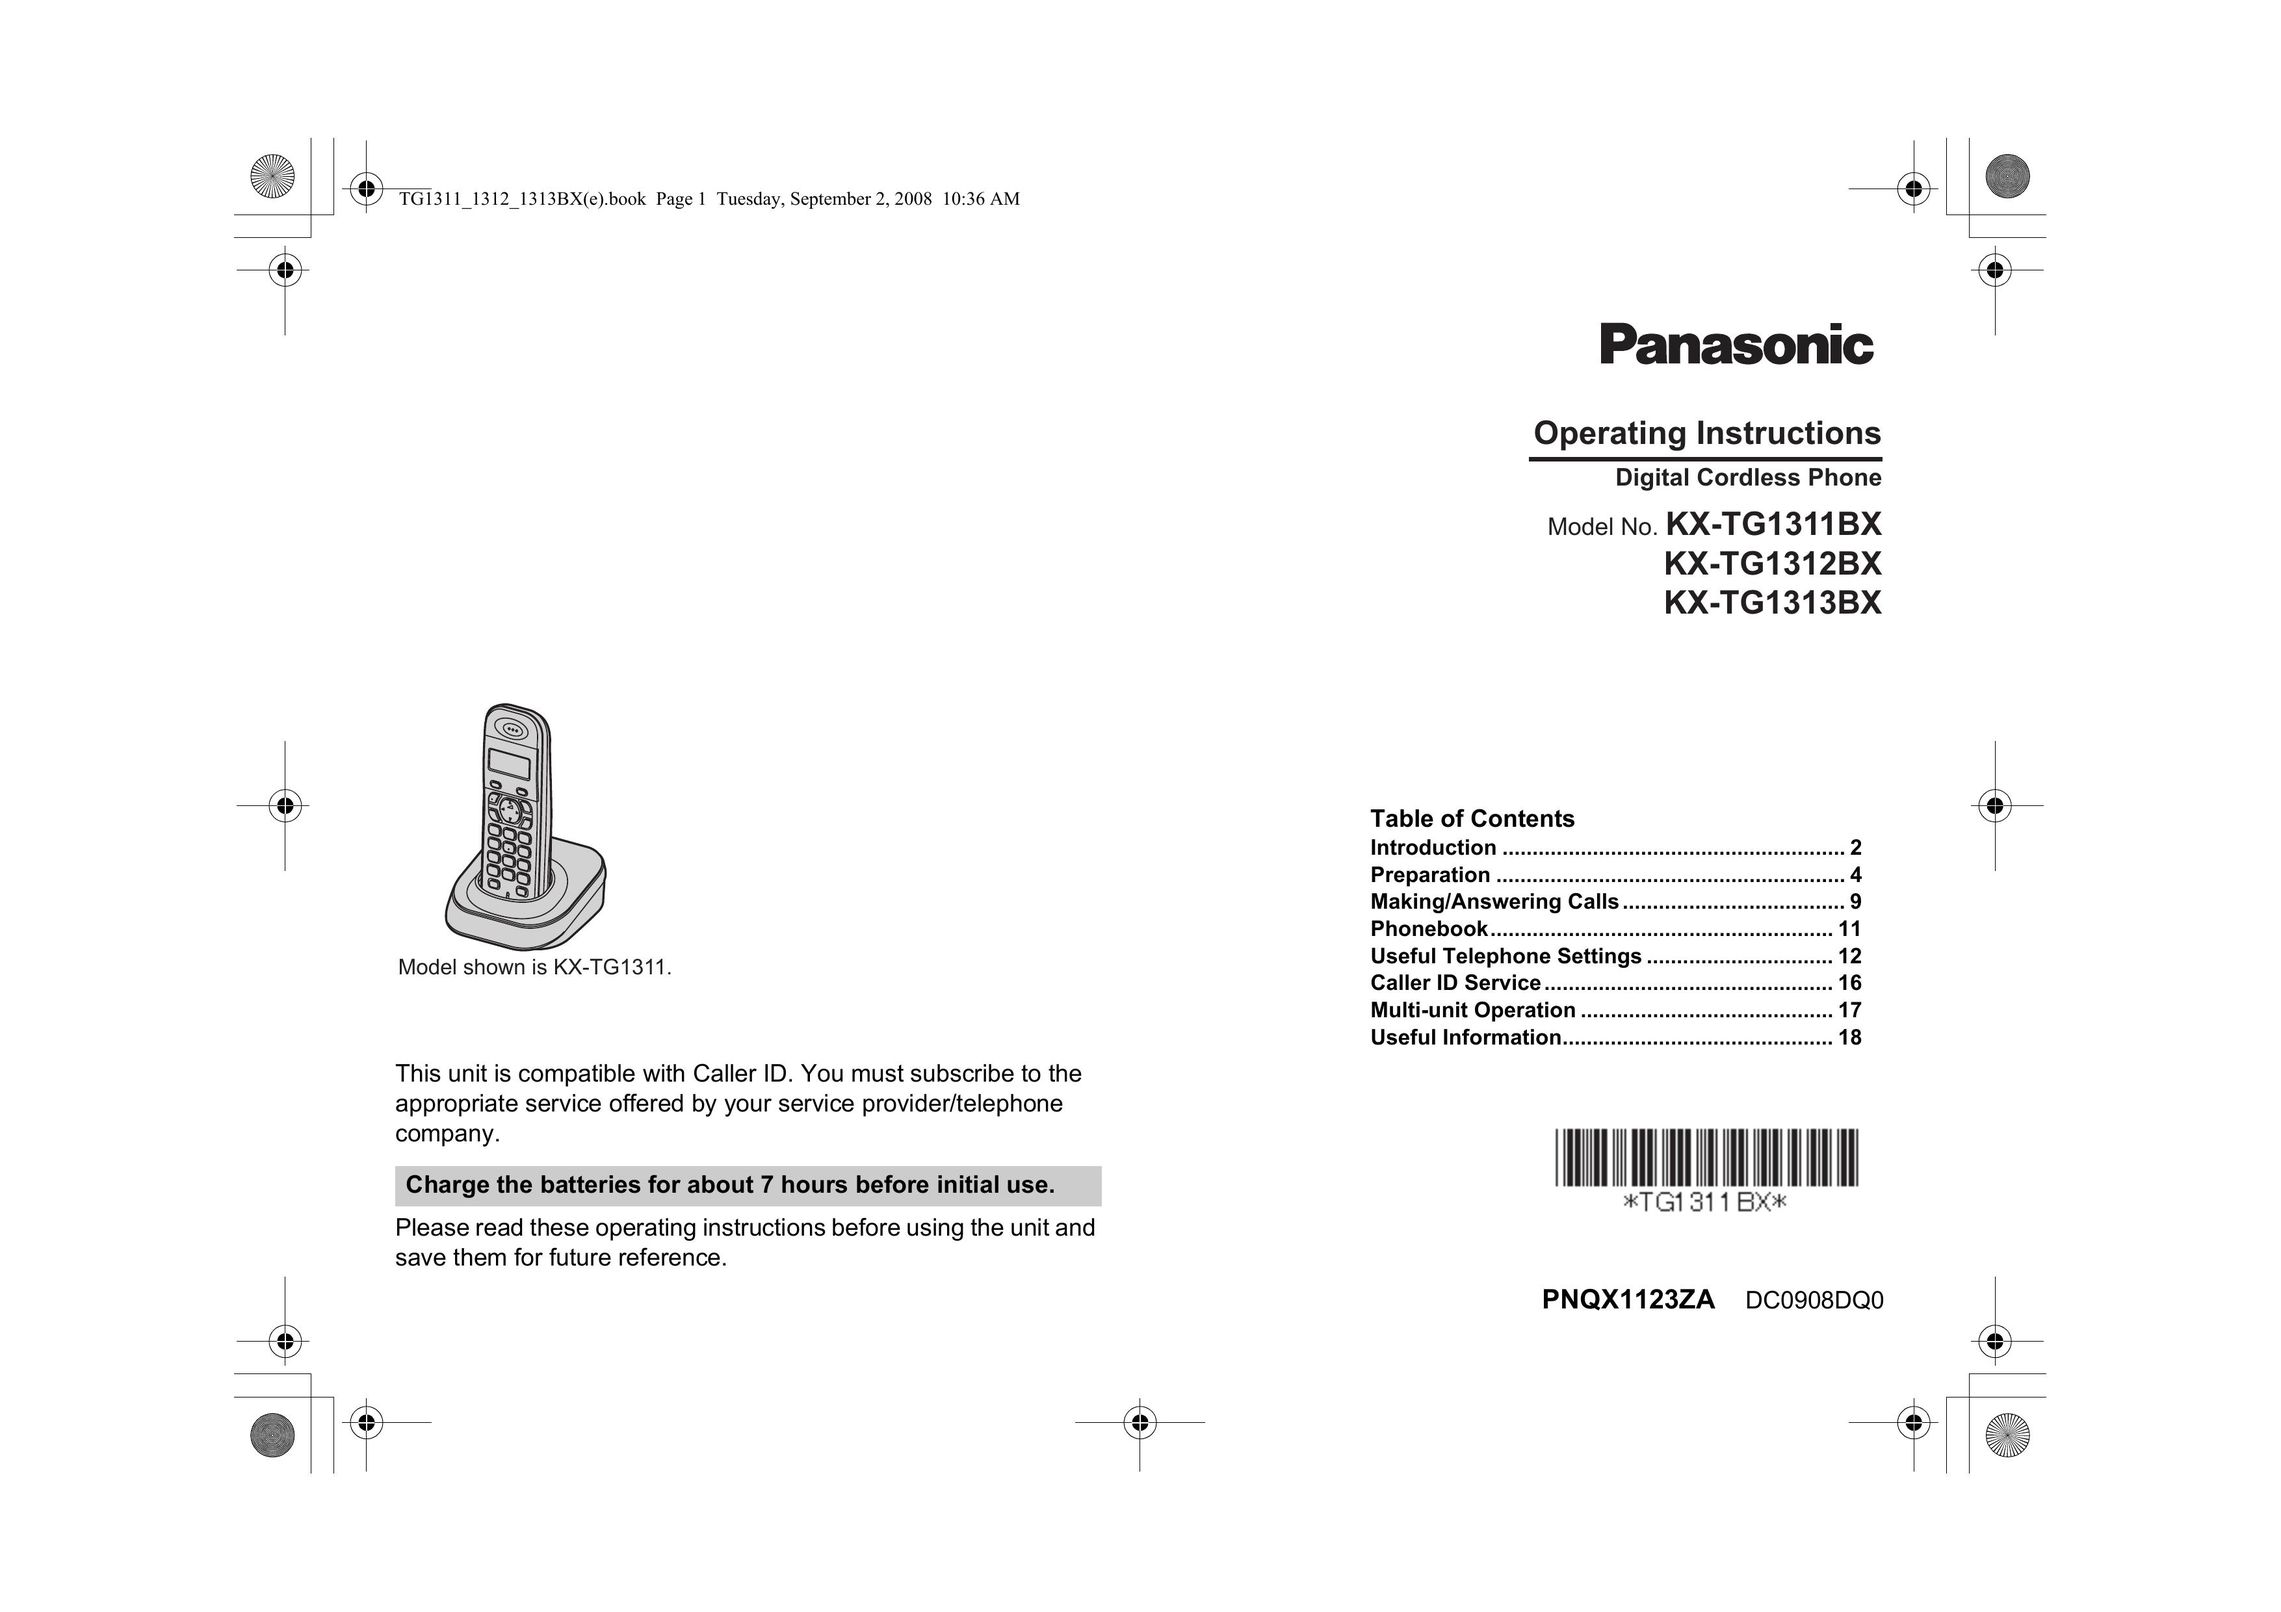 Panasonic KX-TG1312BX Cordless Telephone User Manual